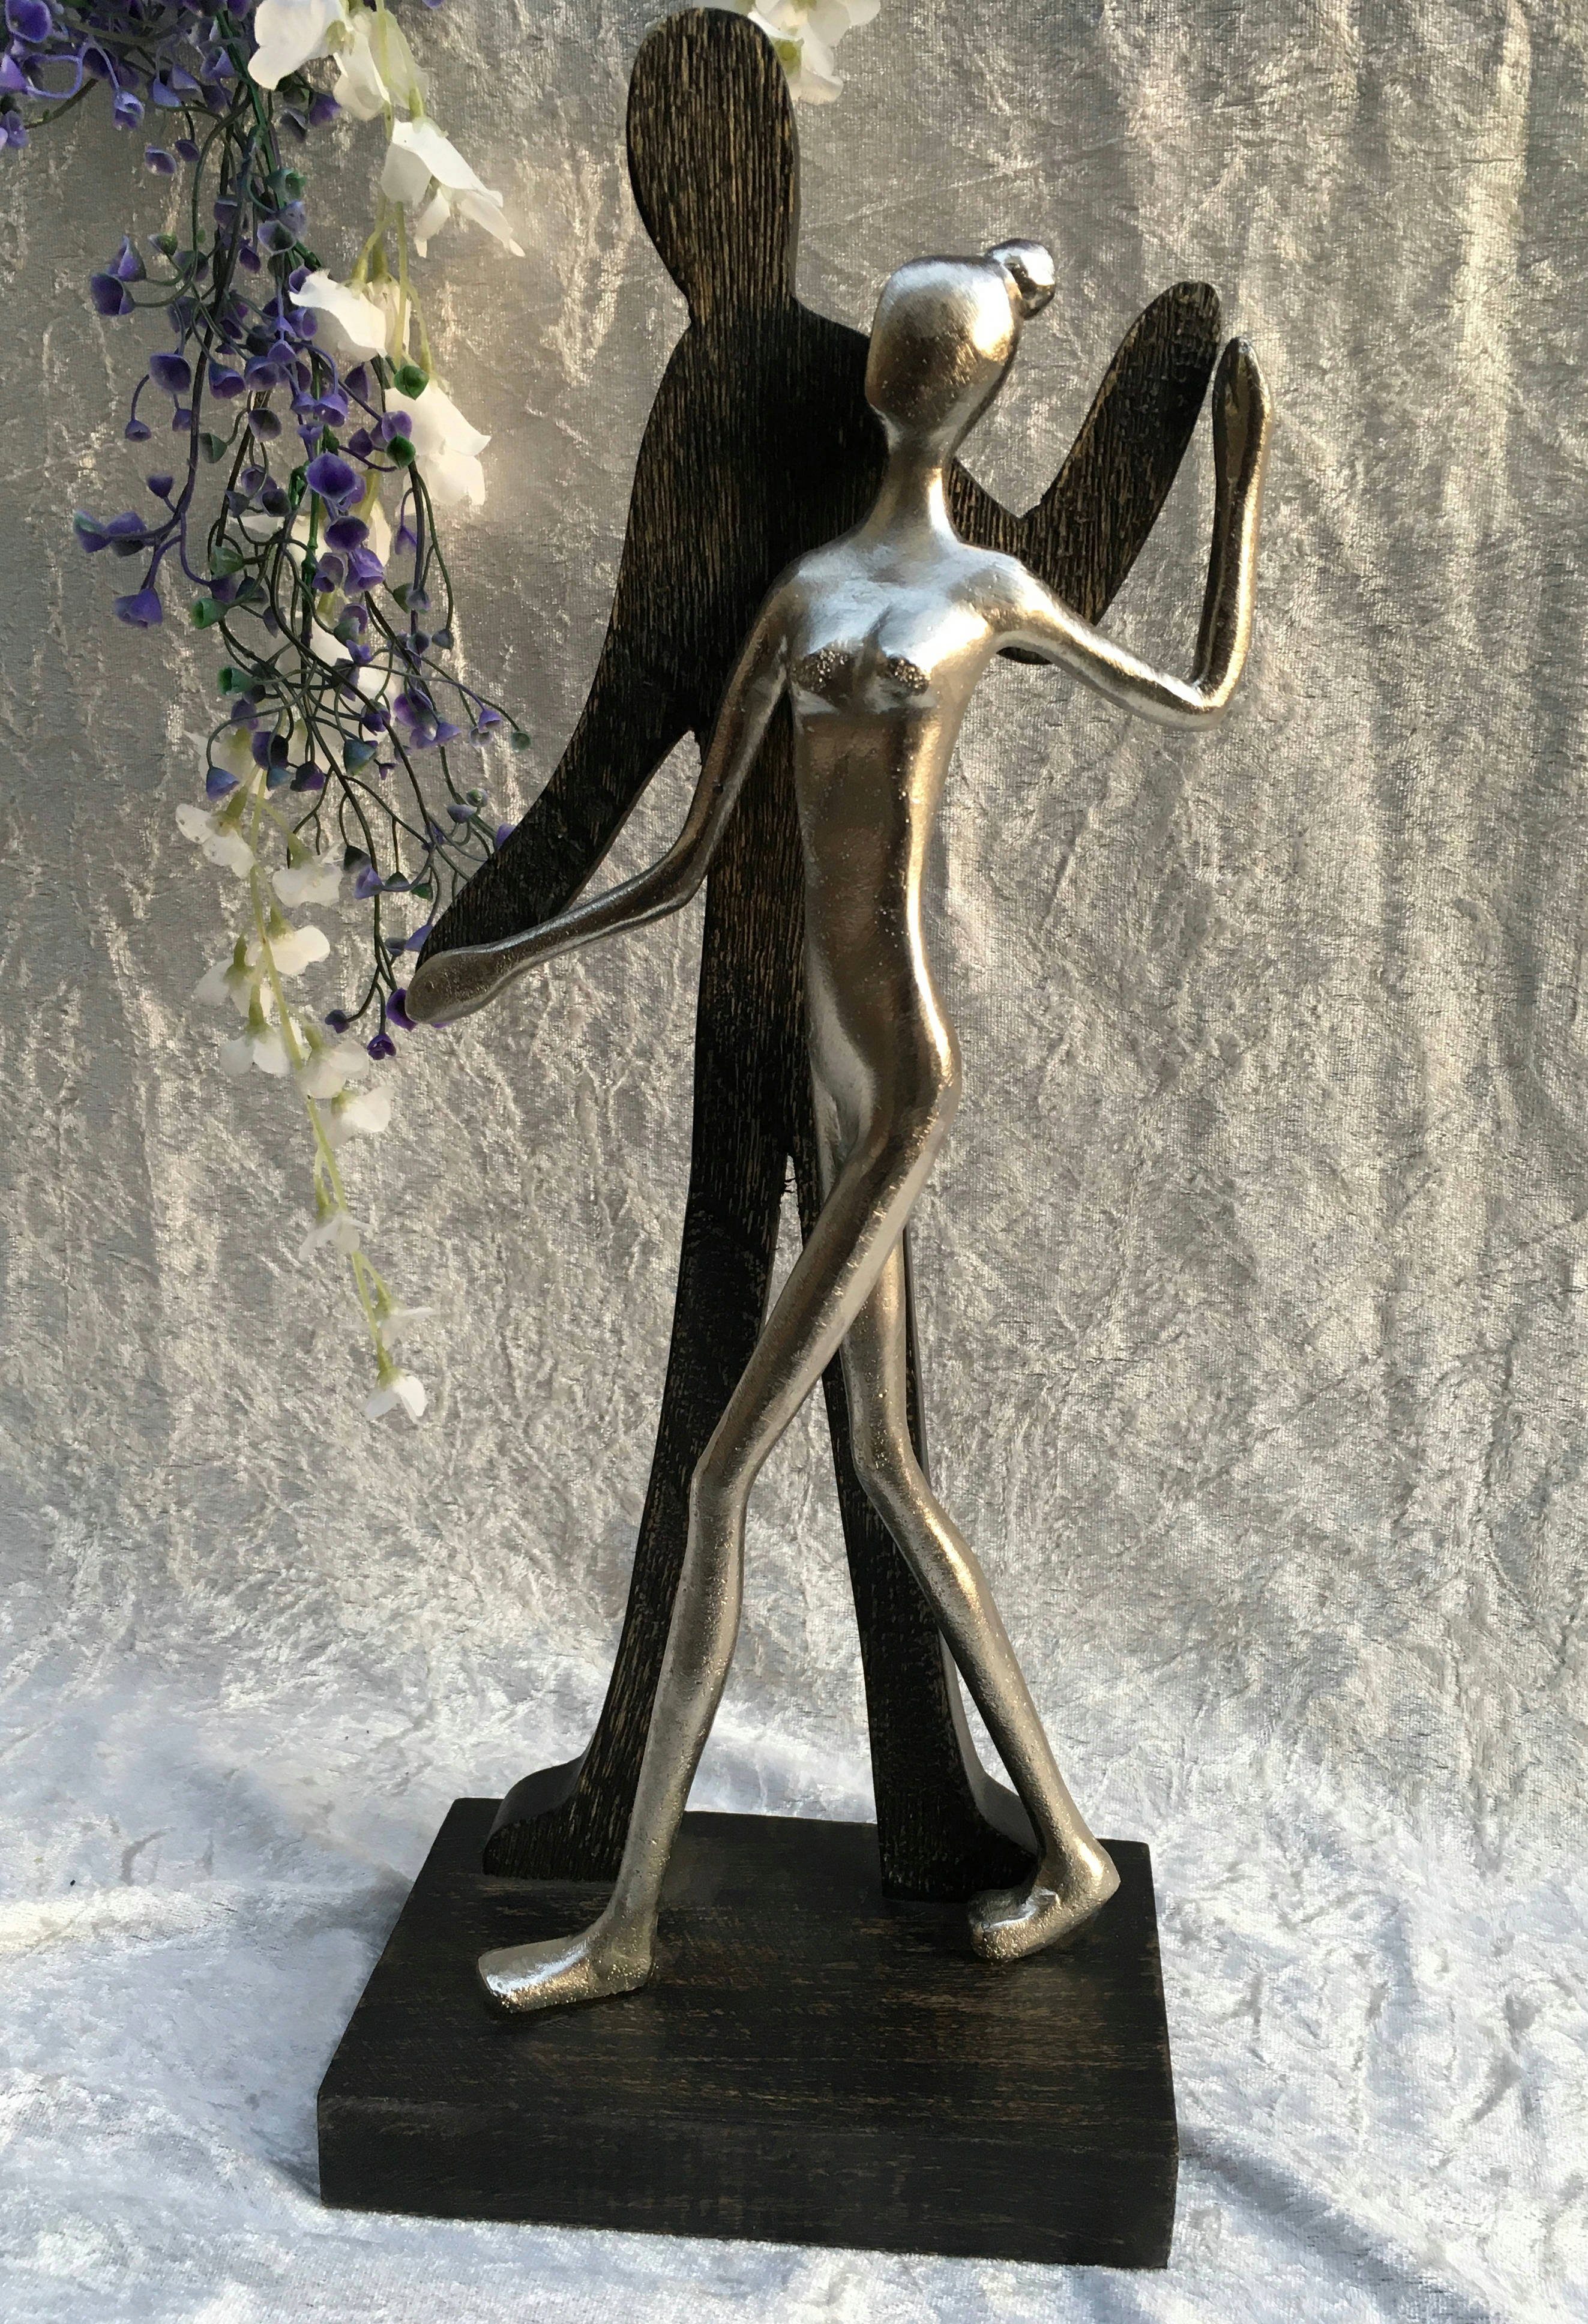 Moritz Skulptur Skulptur Tanzpaar Tänzer Fensterdeko, Dekoobjekt 10x17x41cm, Holzdeko Tischdeko, Wanddeko, Holz